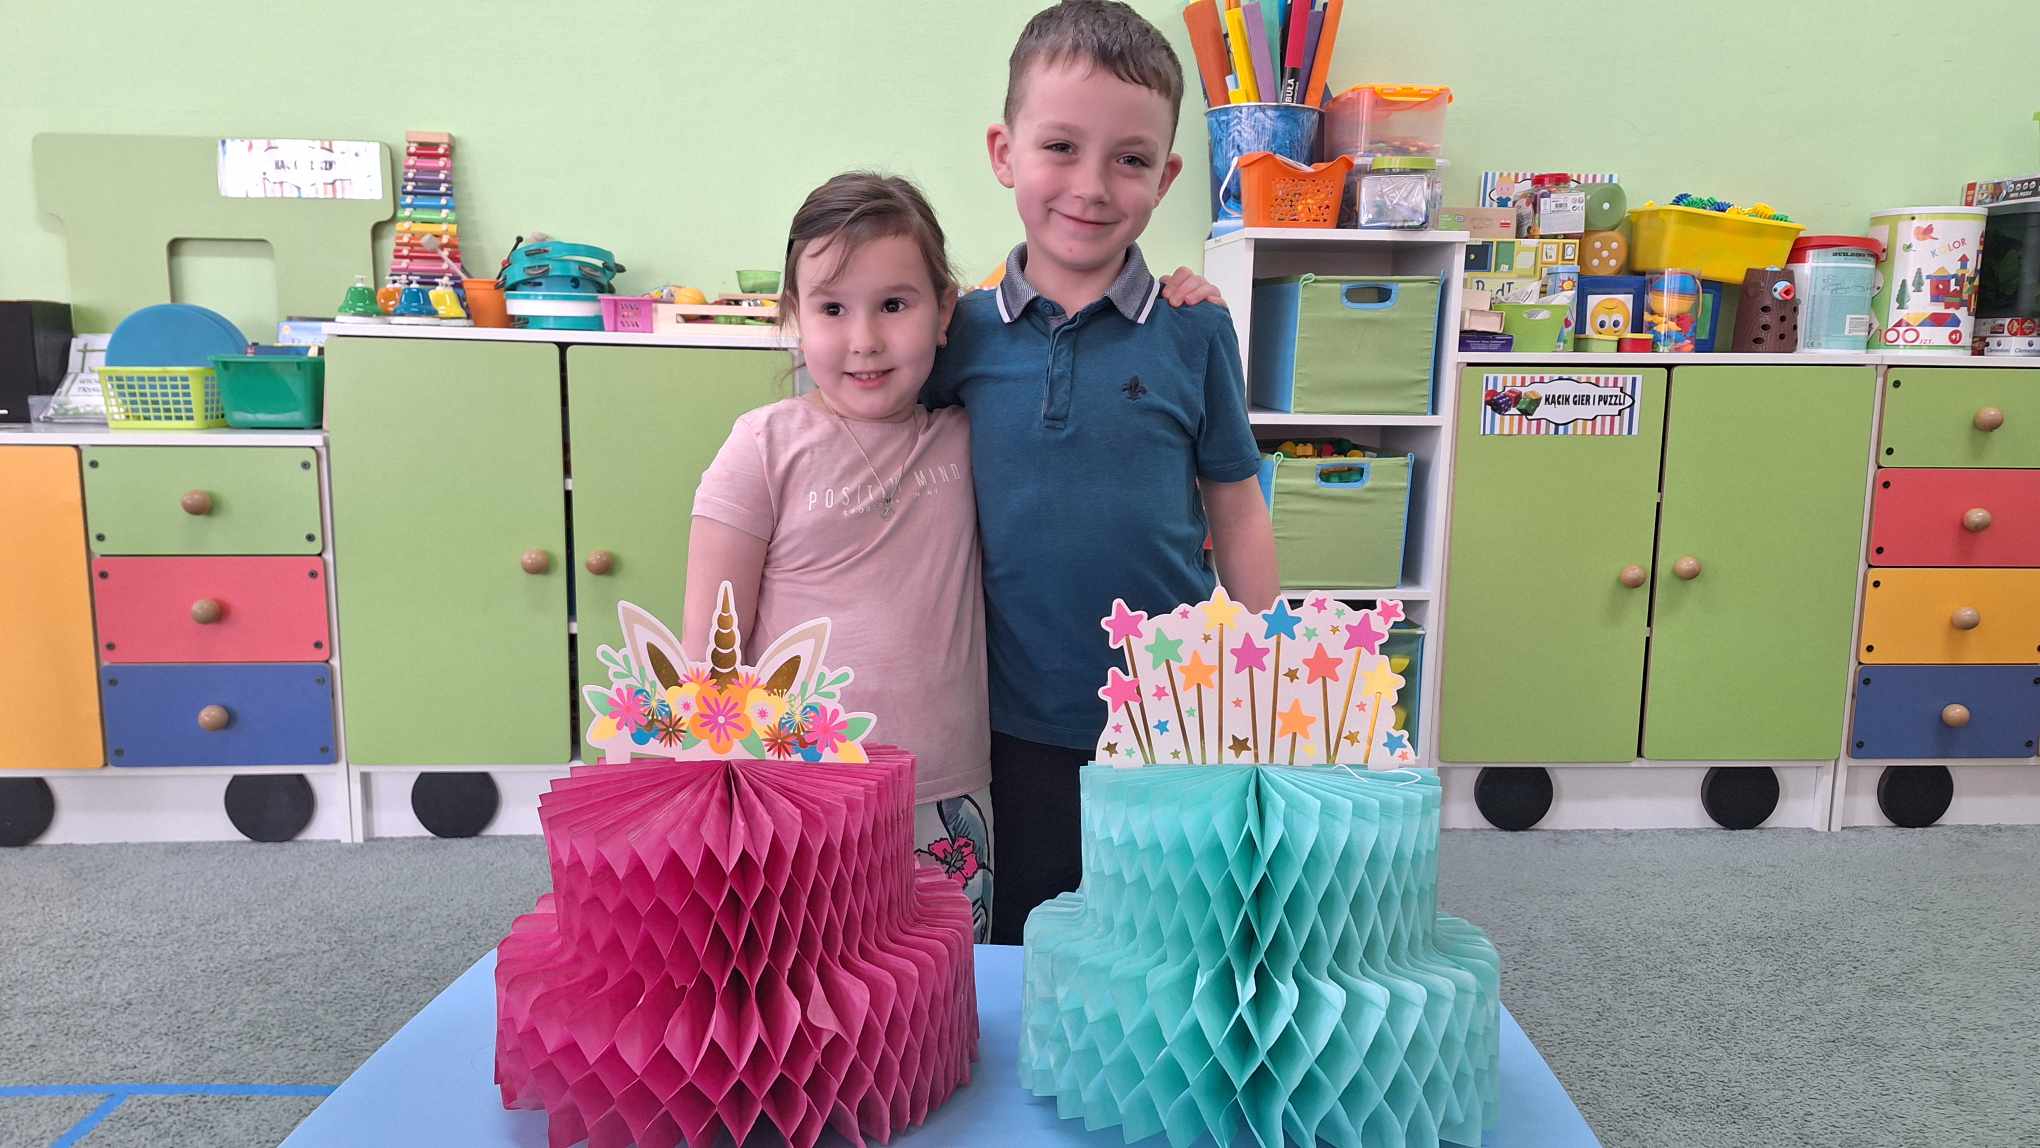 Antosia i Oskar pozują do zdjęcia obejmując się. Przed nimi stoi stolik z dwoma papierowymi tortami - różowym i niebieskim.